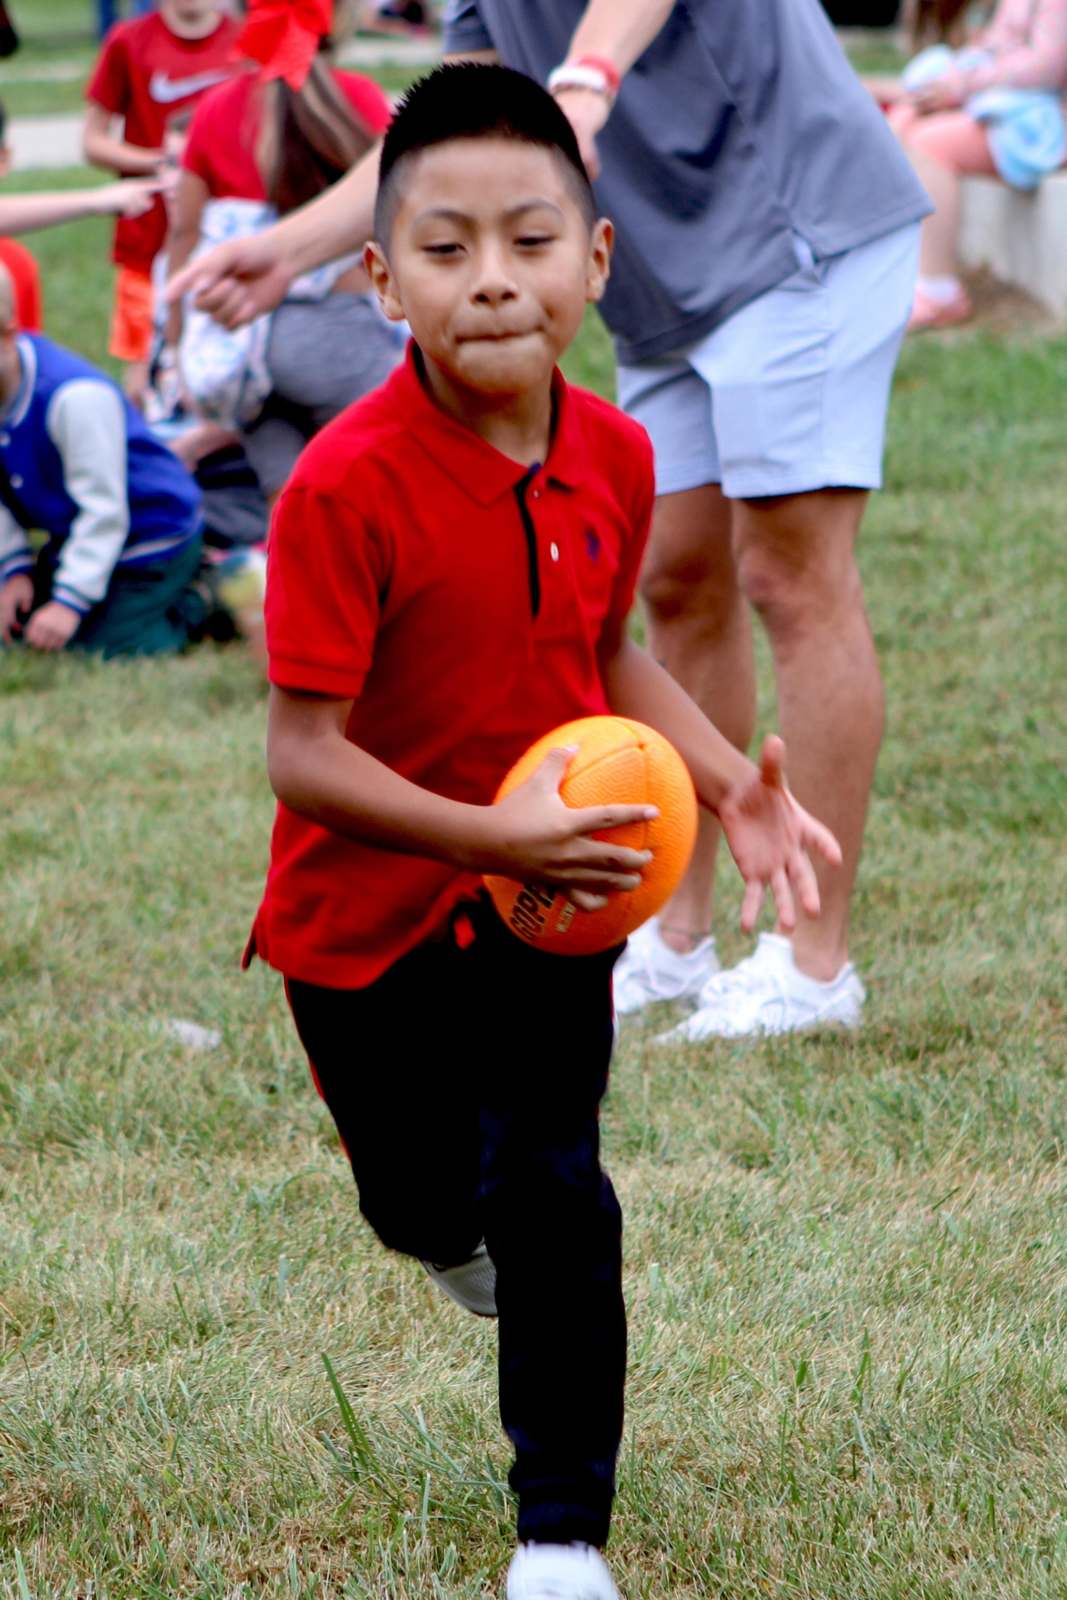 a boy running with a ball